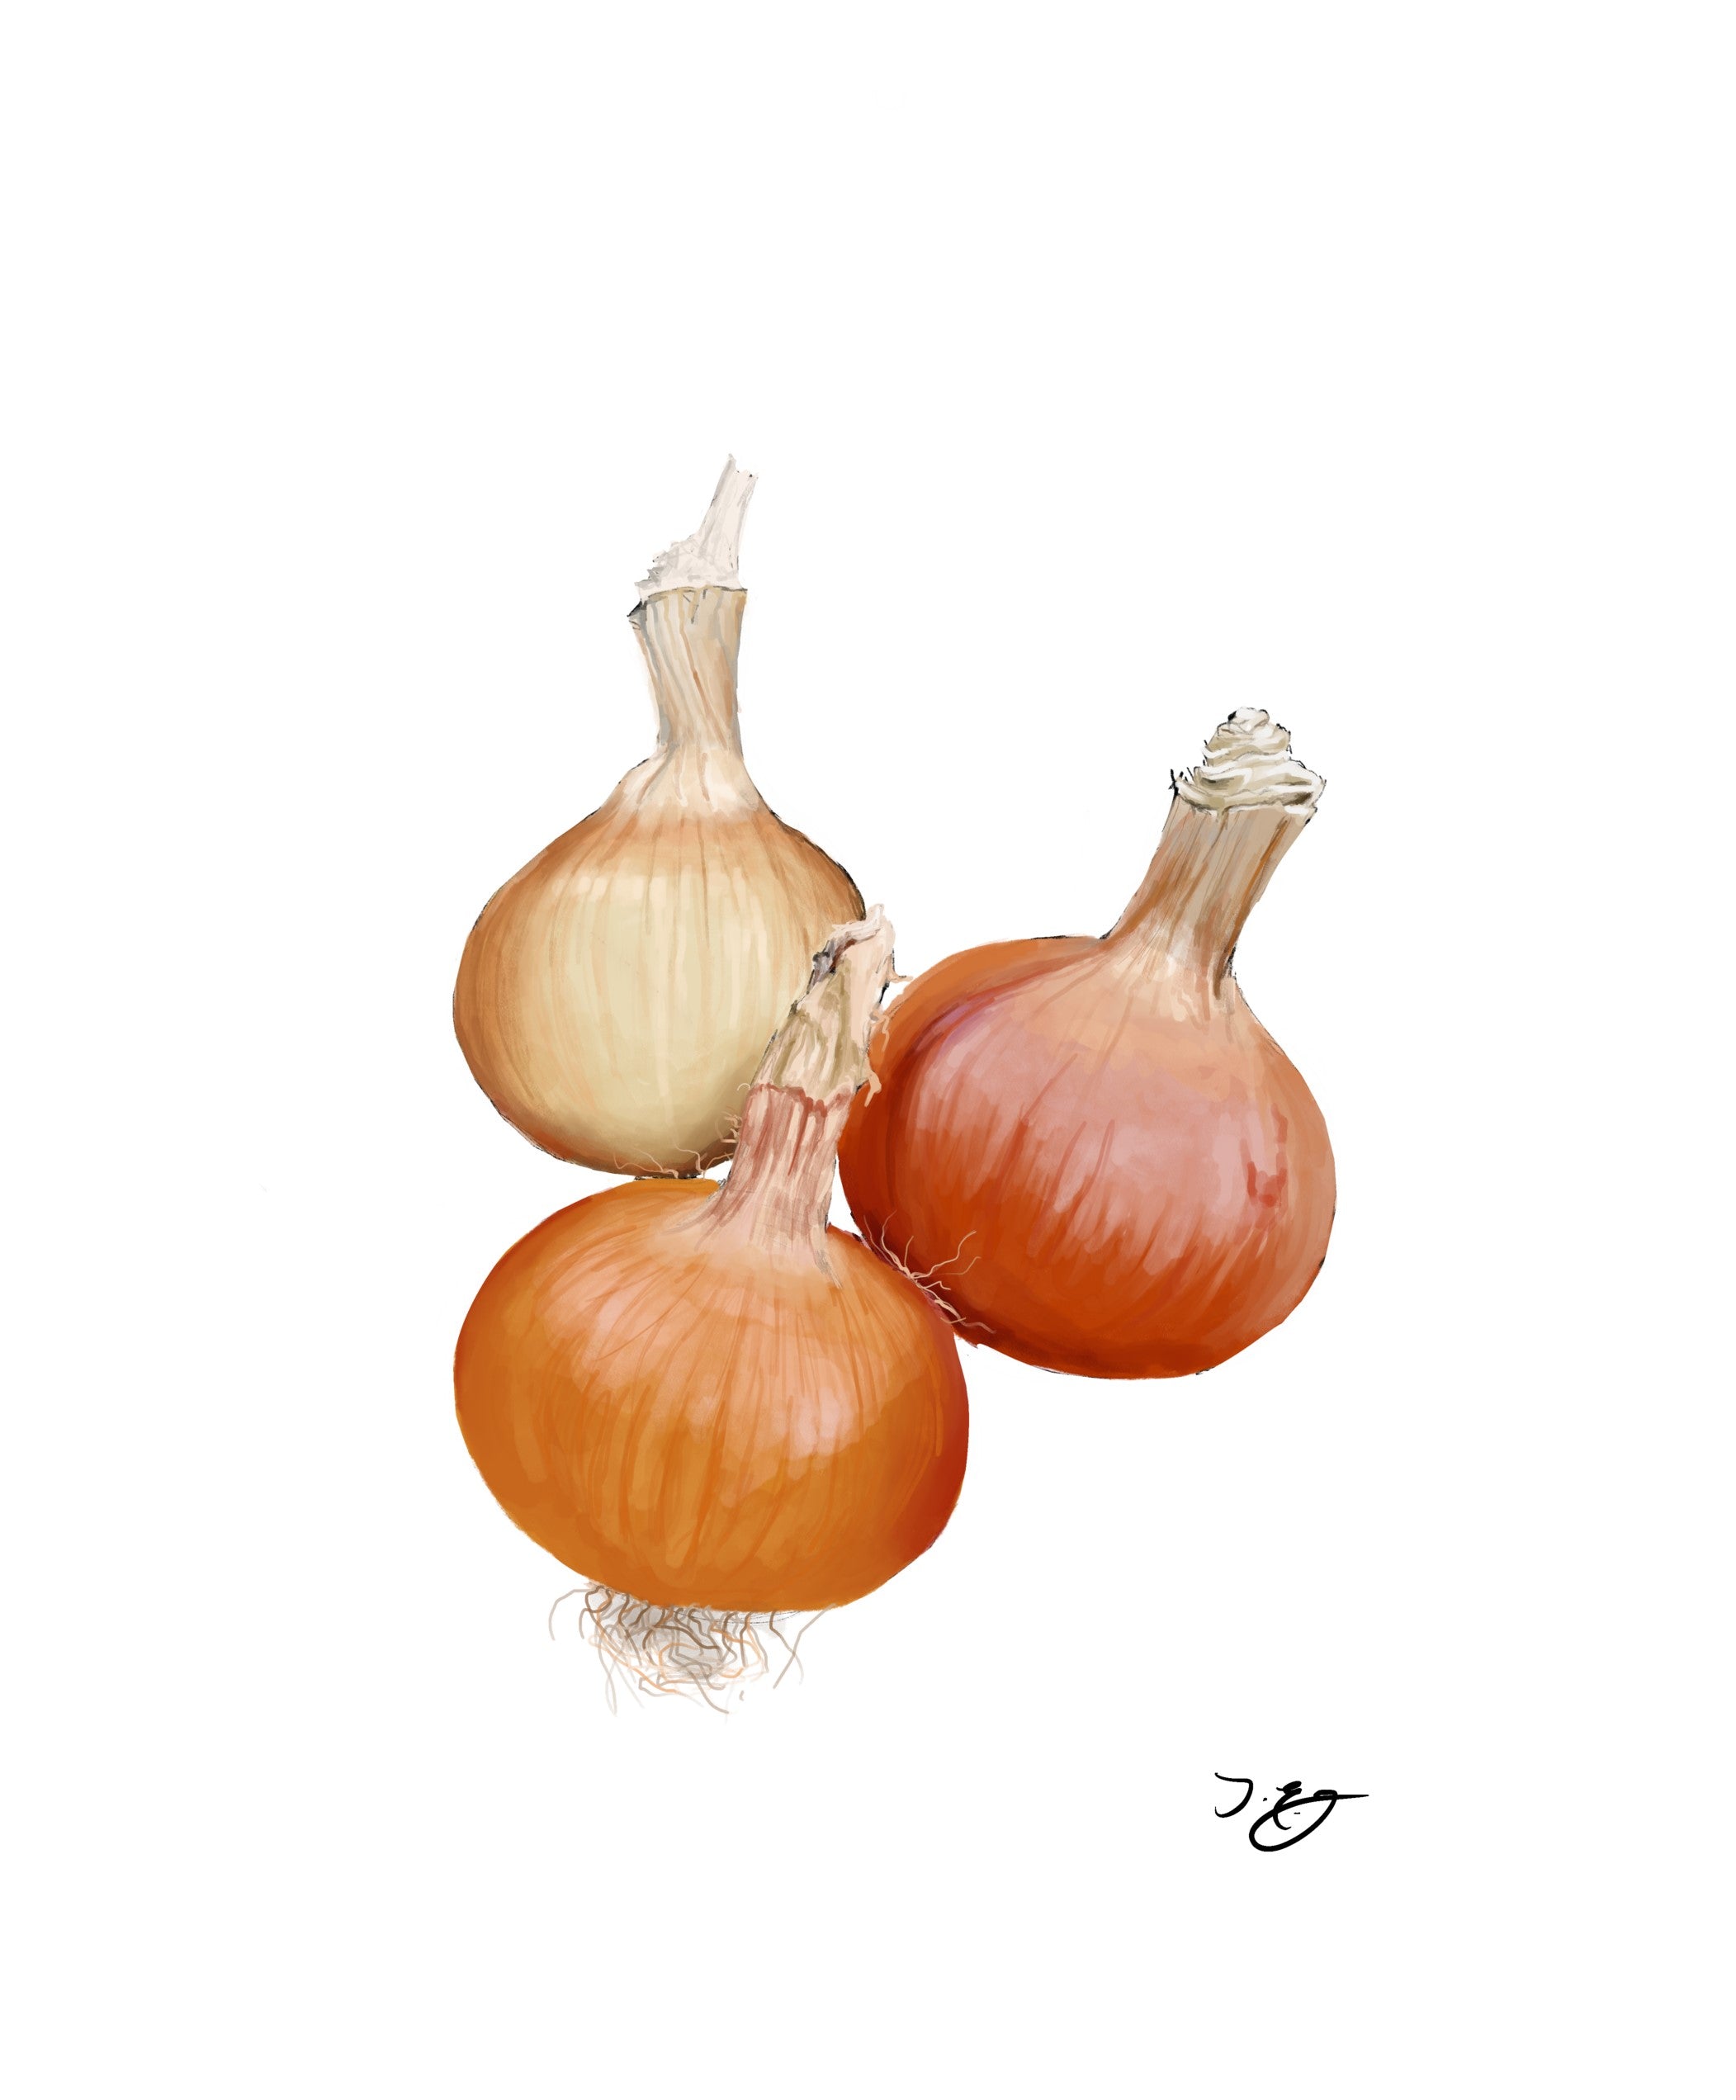 Onions - Golden Skinned - 500g